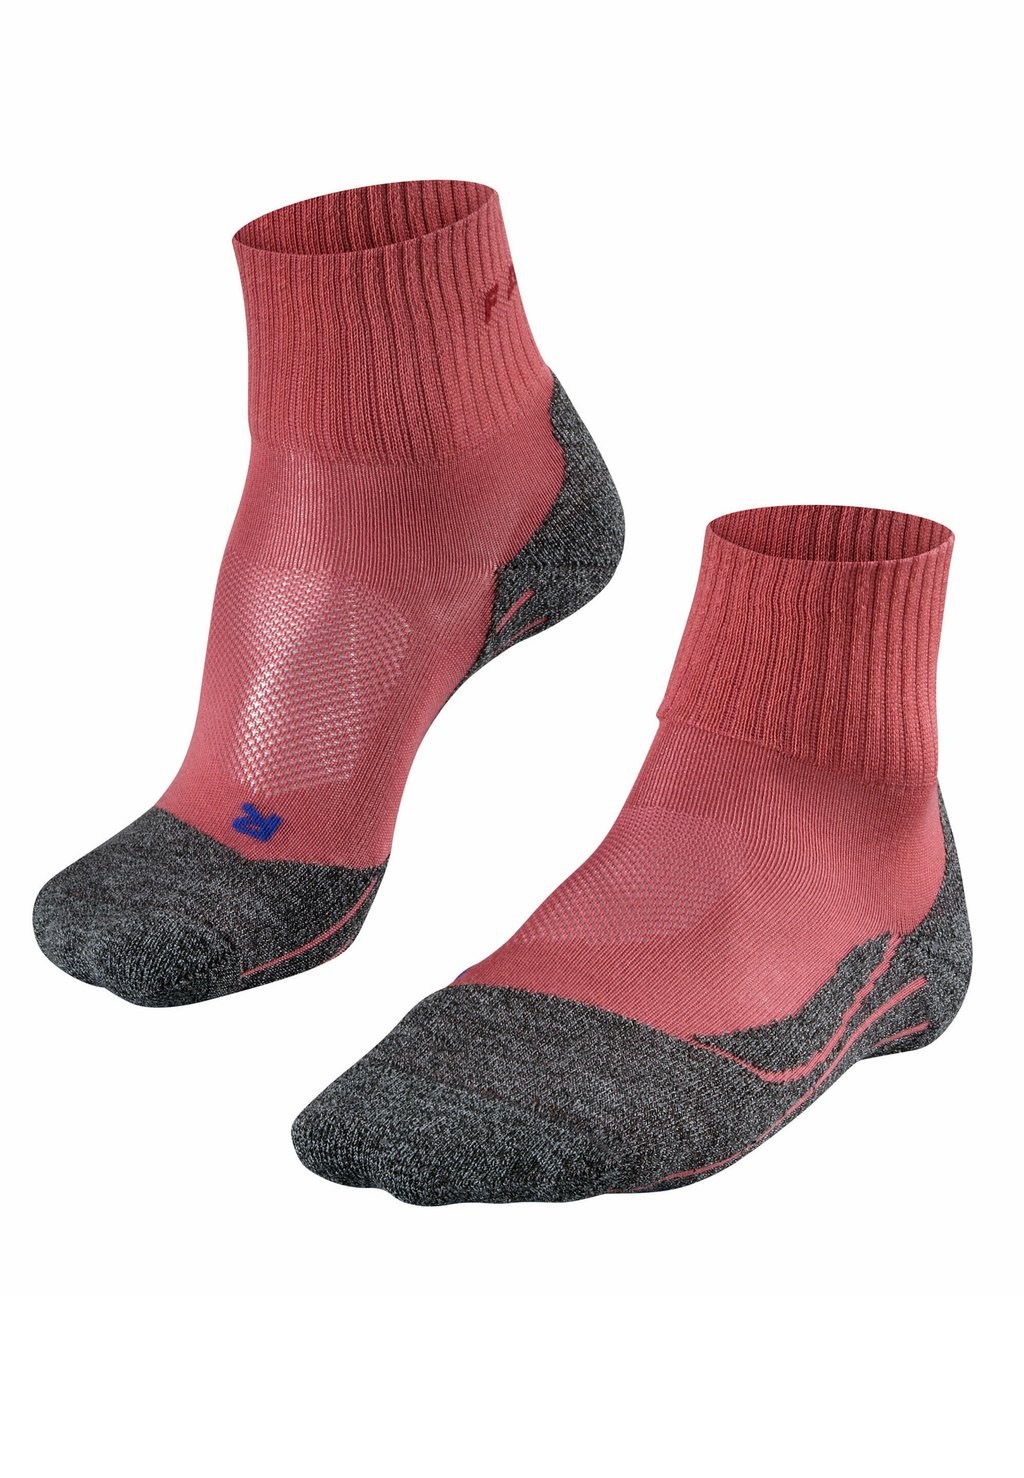 Спортивные носки TK2 Explore Cool Short Trekking Functional со средней амортизацией FALKE, цвет mixed berry